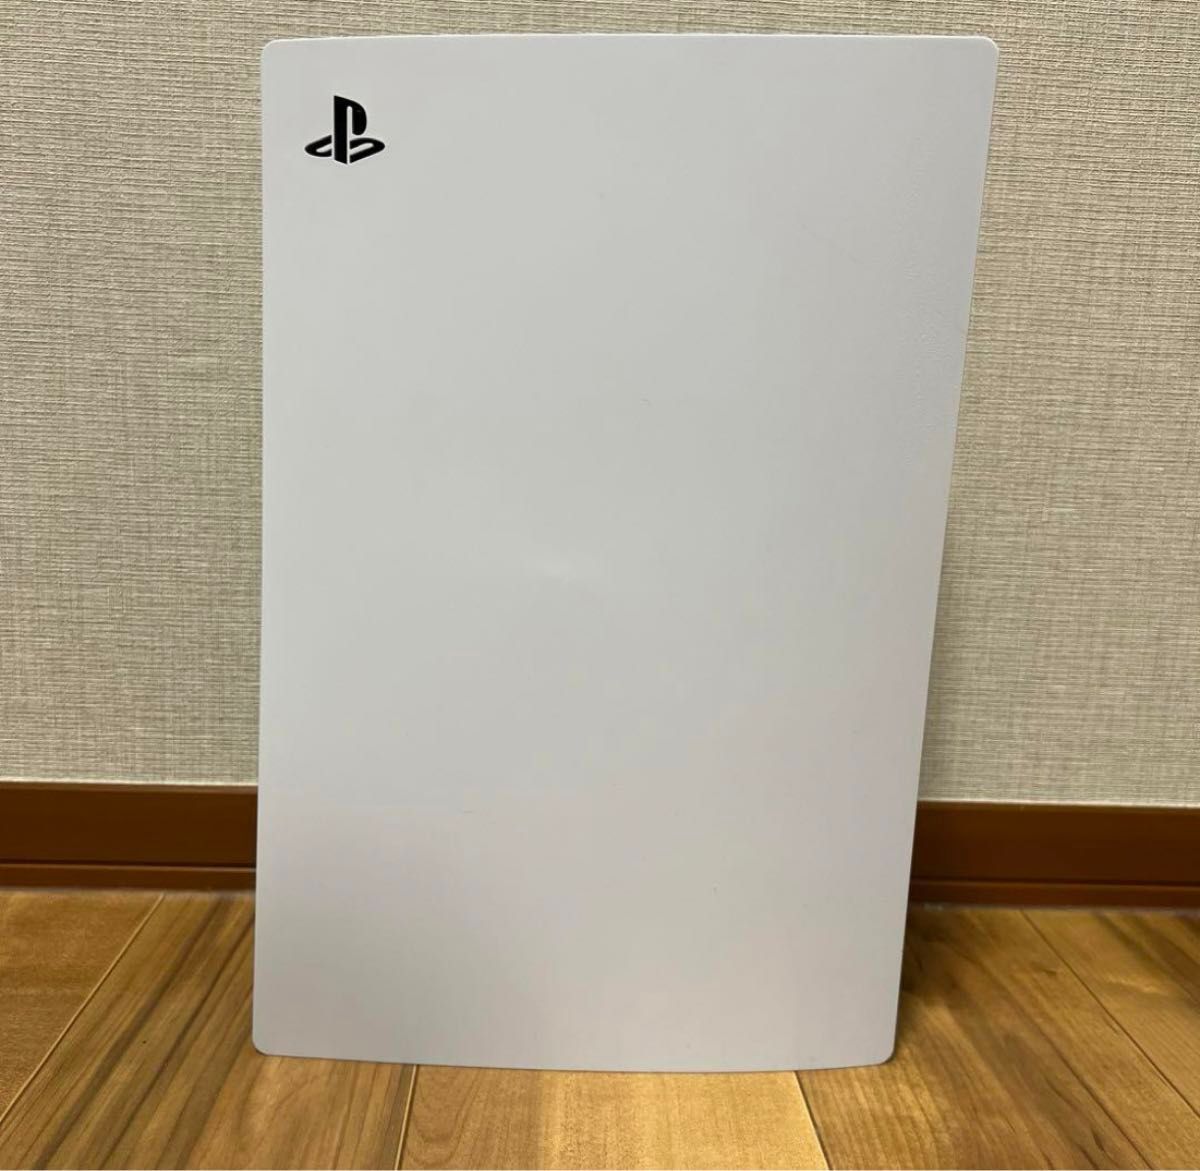  PlayStation5 ディスクドライブ搭載 ソニー プレイステーション